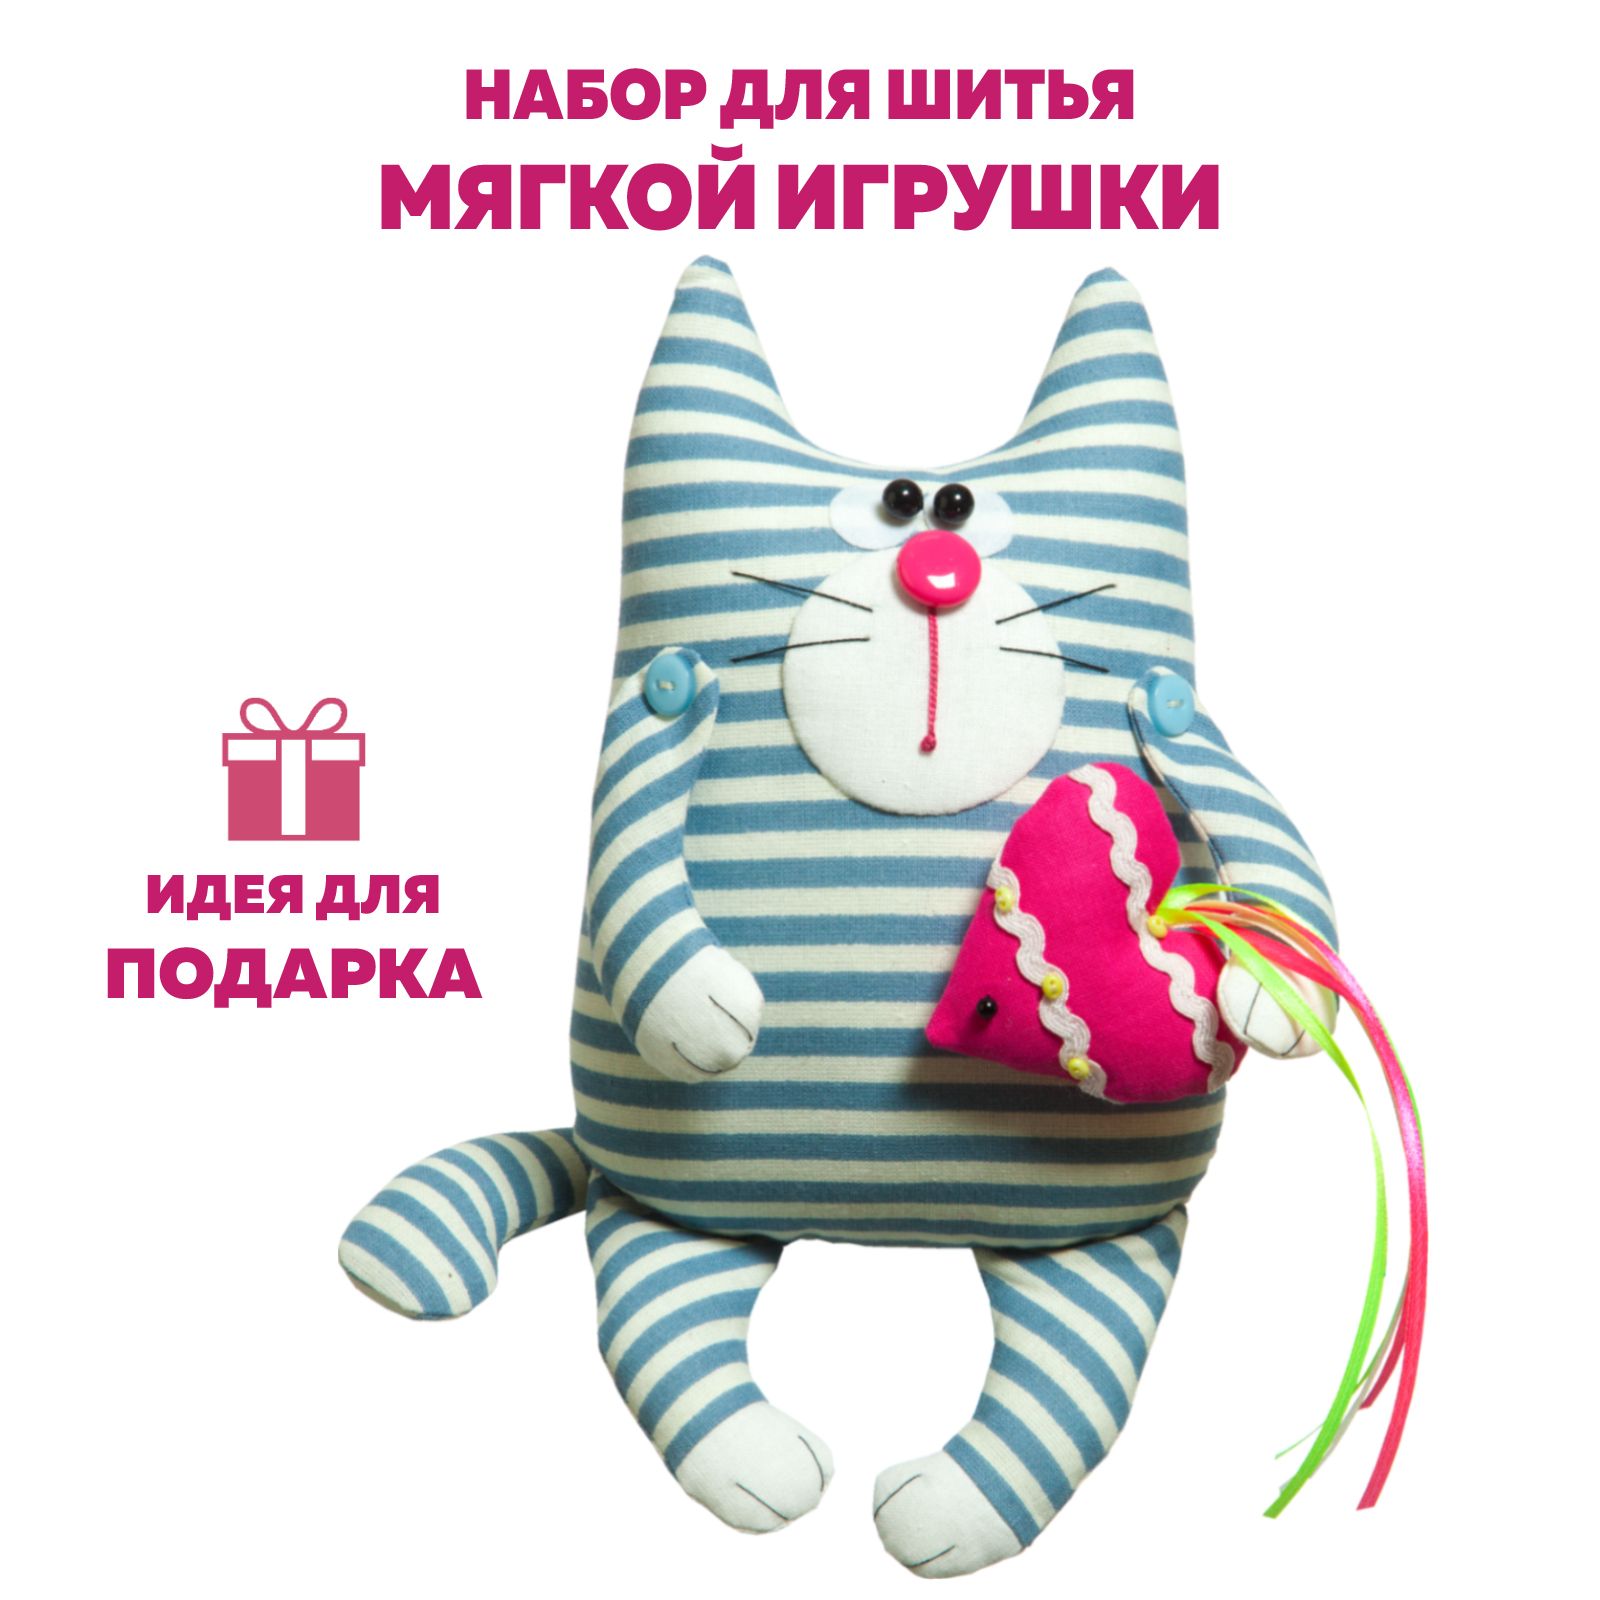 Большие плюшевые мишки и коллекционные мягкие игрушки в Красноярске